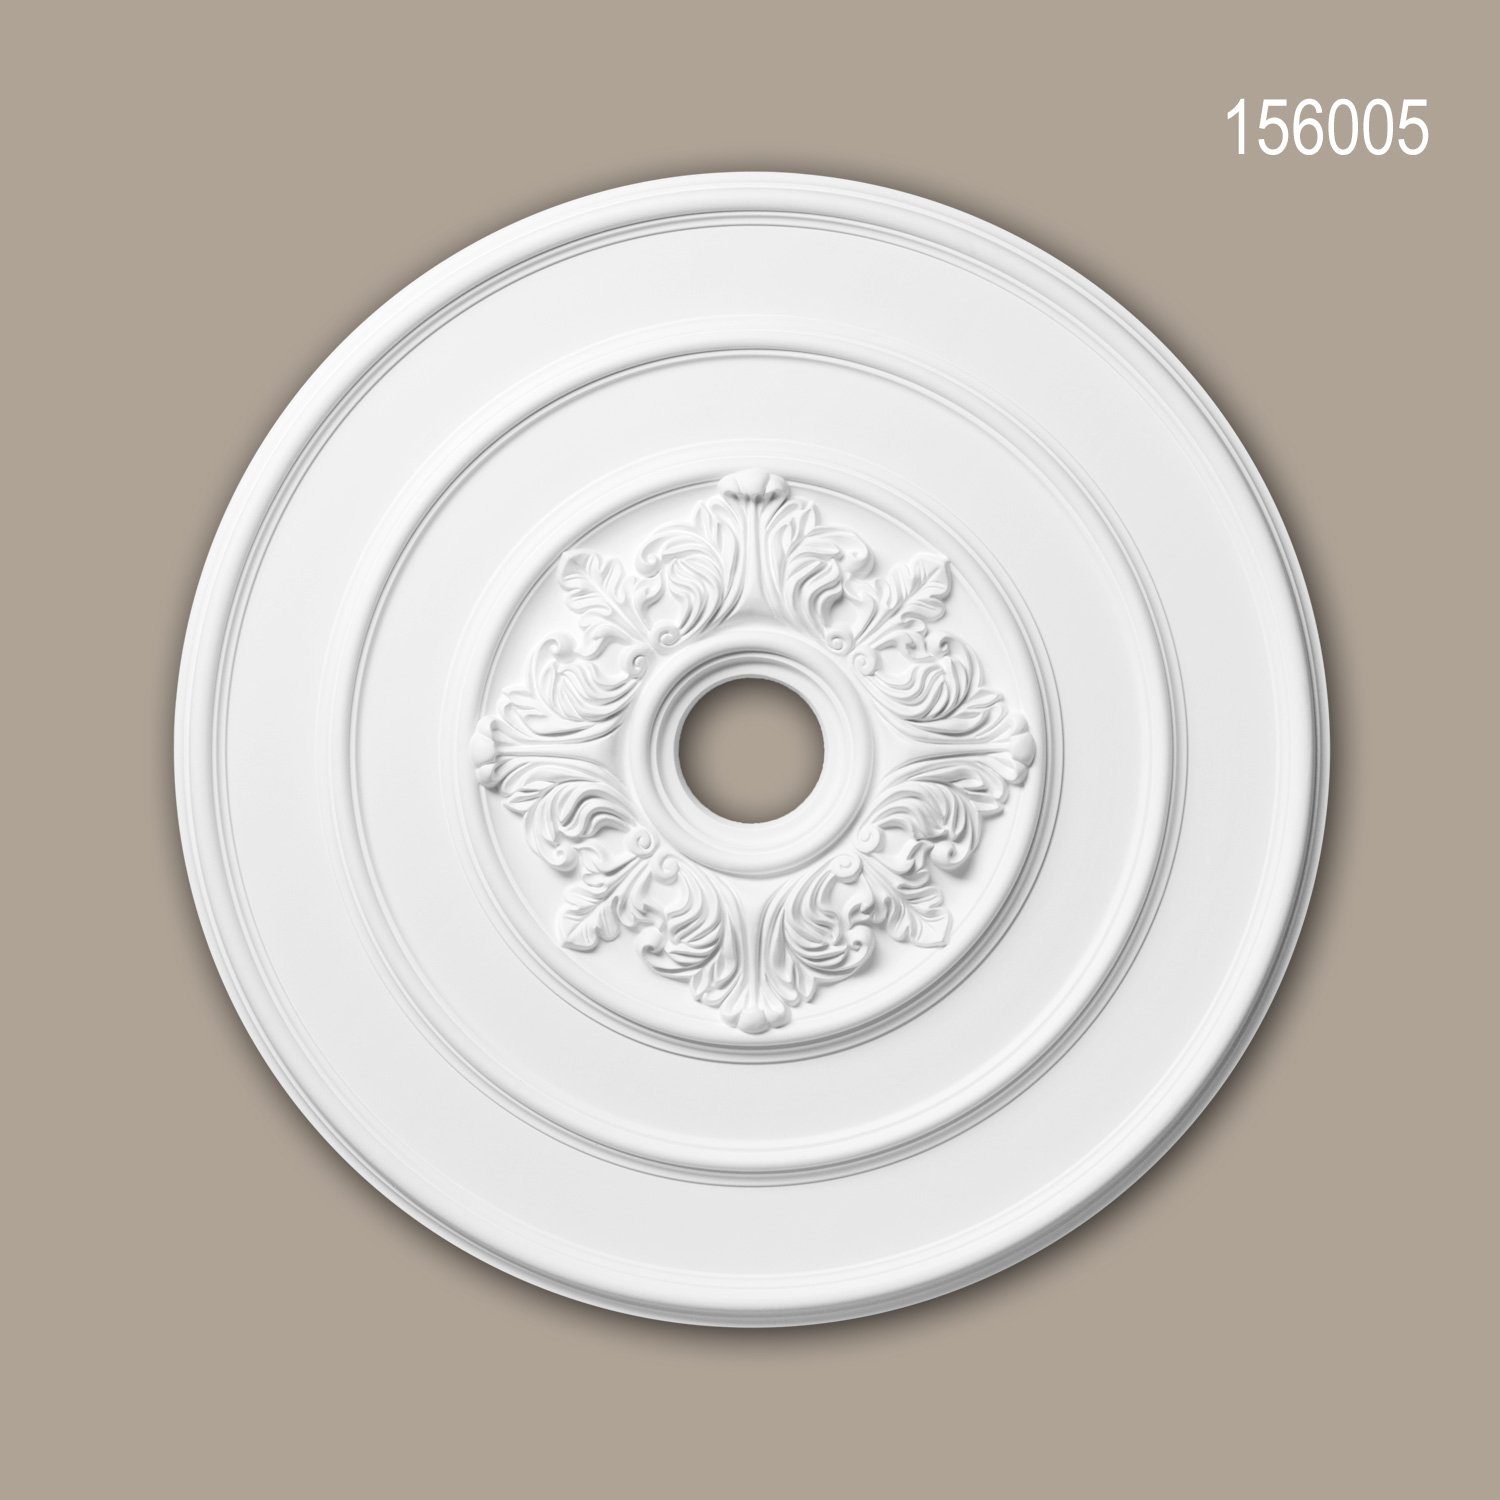 Profhome Decken-Rosette 156005 (Rosette, 1 St., Deckenrosette, Medallion, Stuckrosette, Deckenelement, Zierelement, Durchmesser 65,6 cm), weiß, vorgrundiert, Stil: Neo-Klassizismus